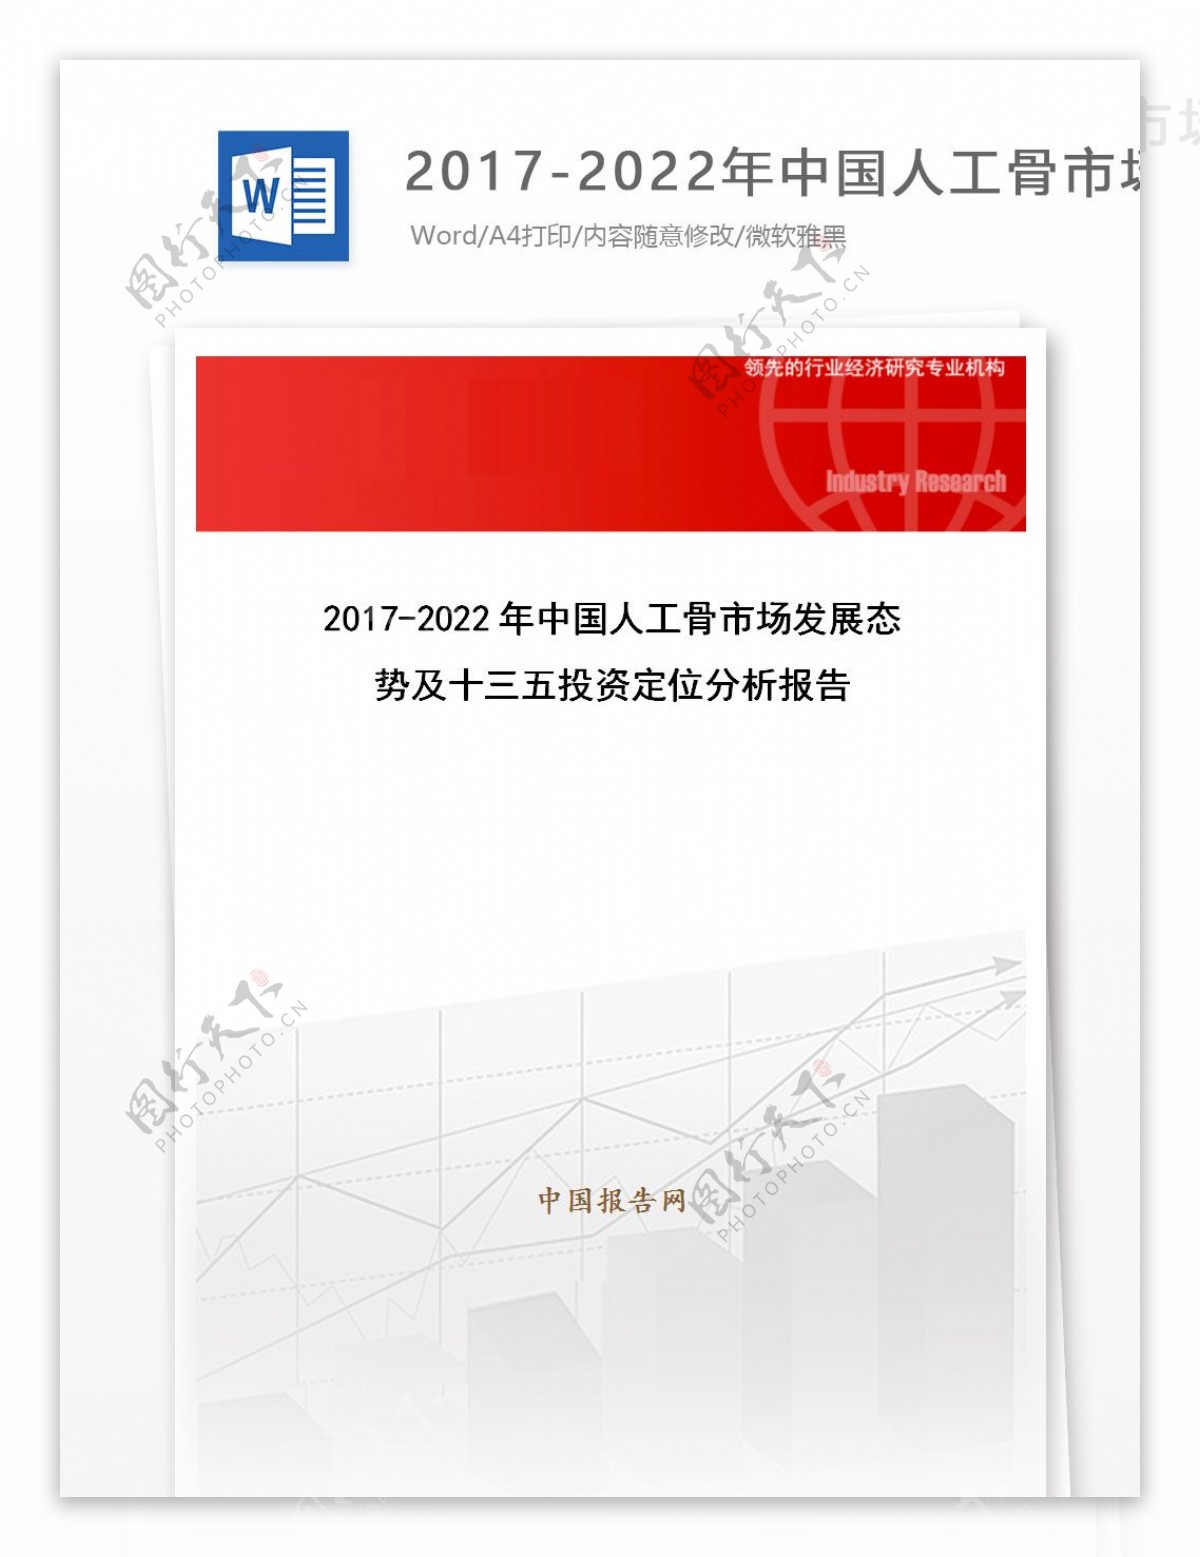 20172022年中国人工骨市场发展态势及十三五投资定位分析报告目录